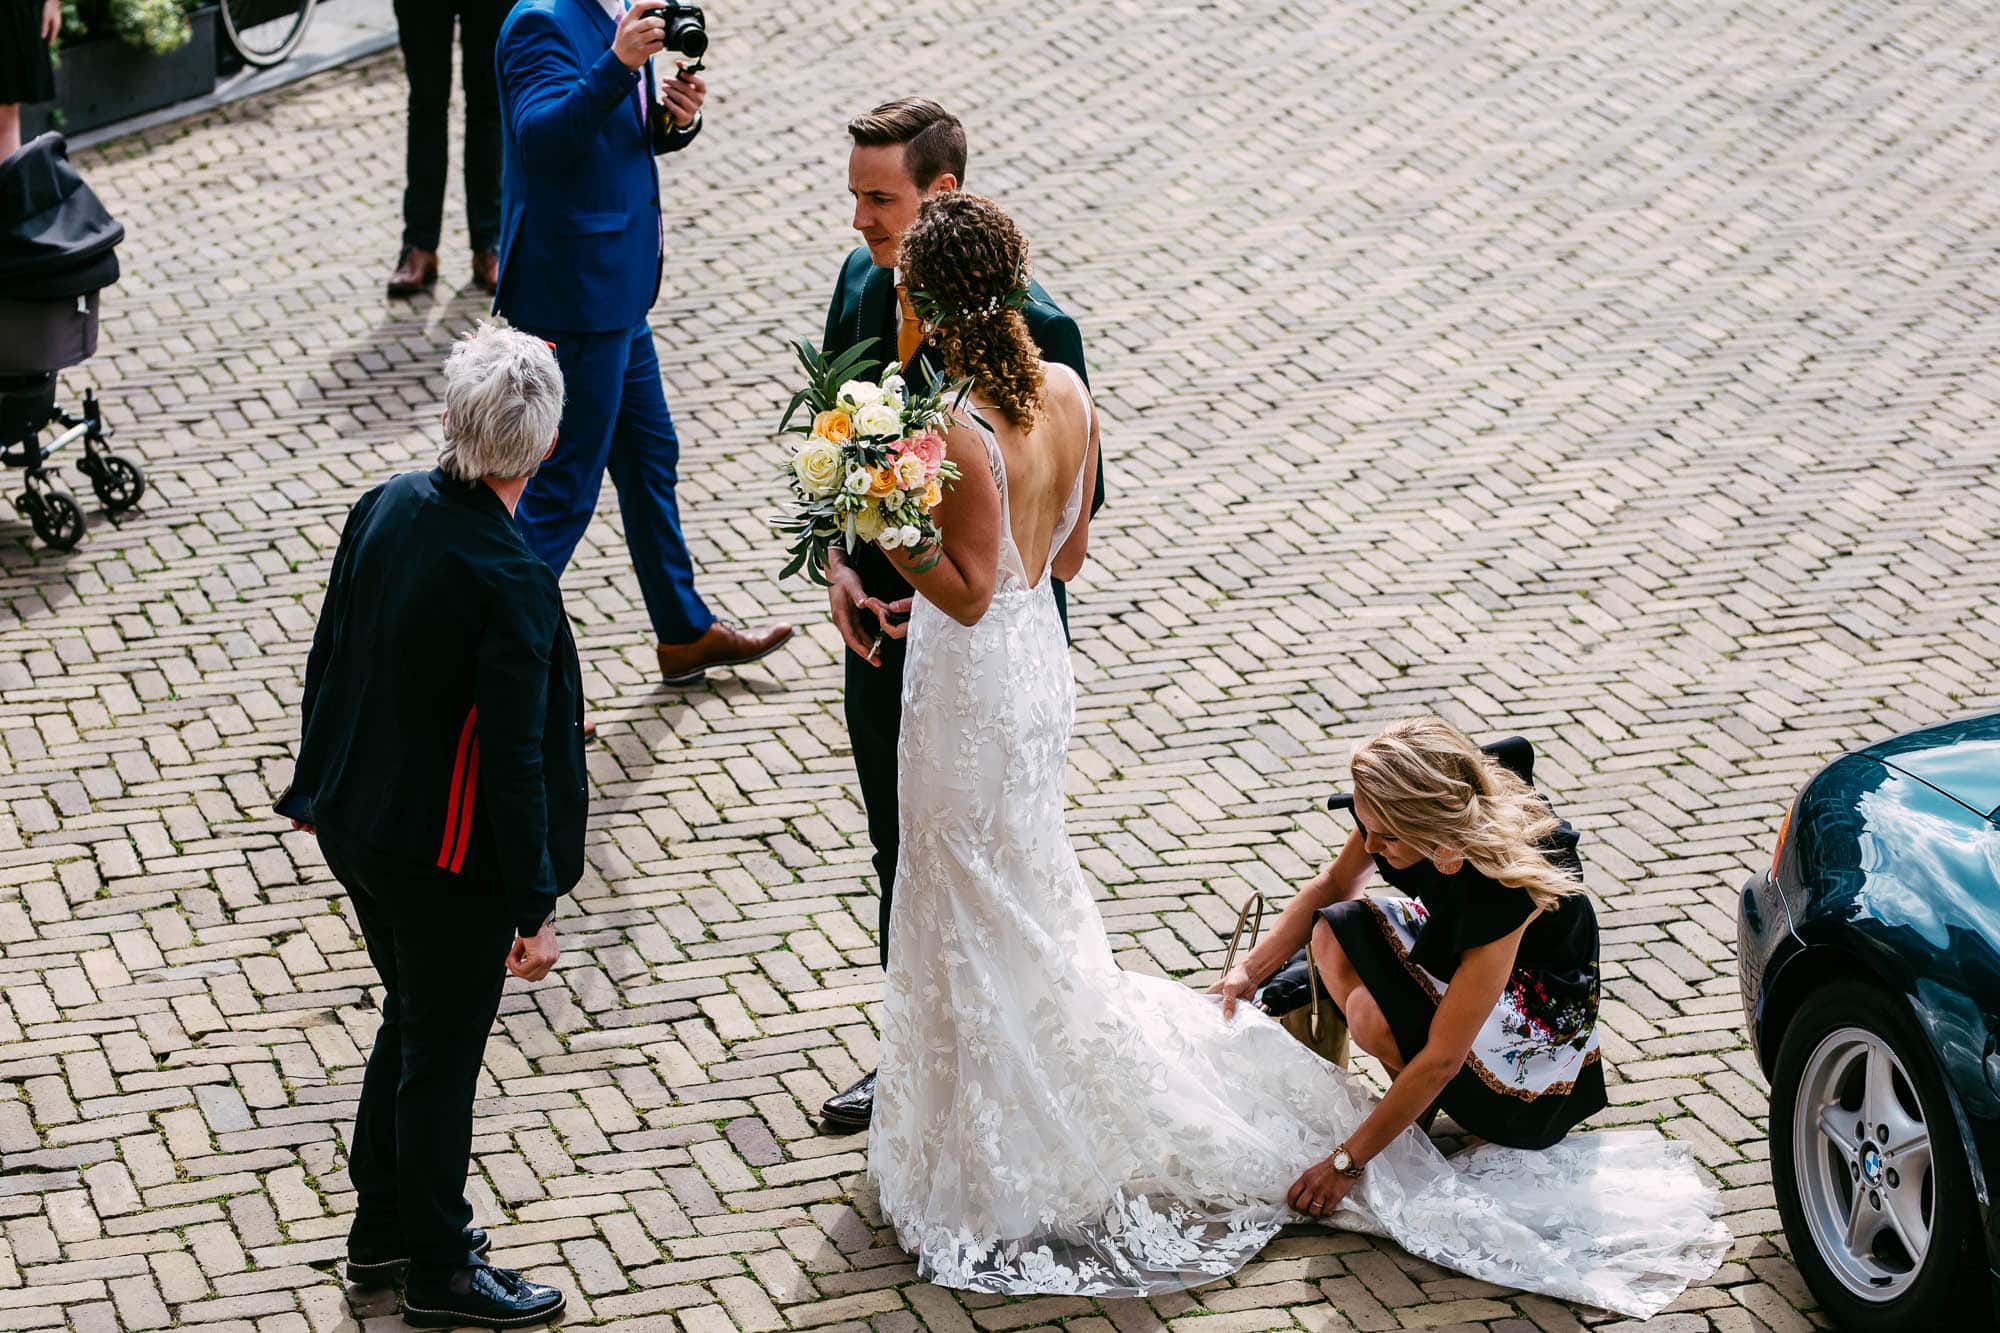 Master of ceremonies helps bride with wedding dress